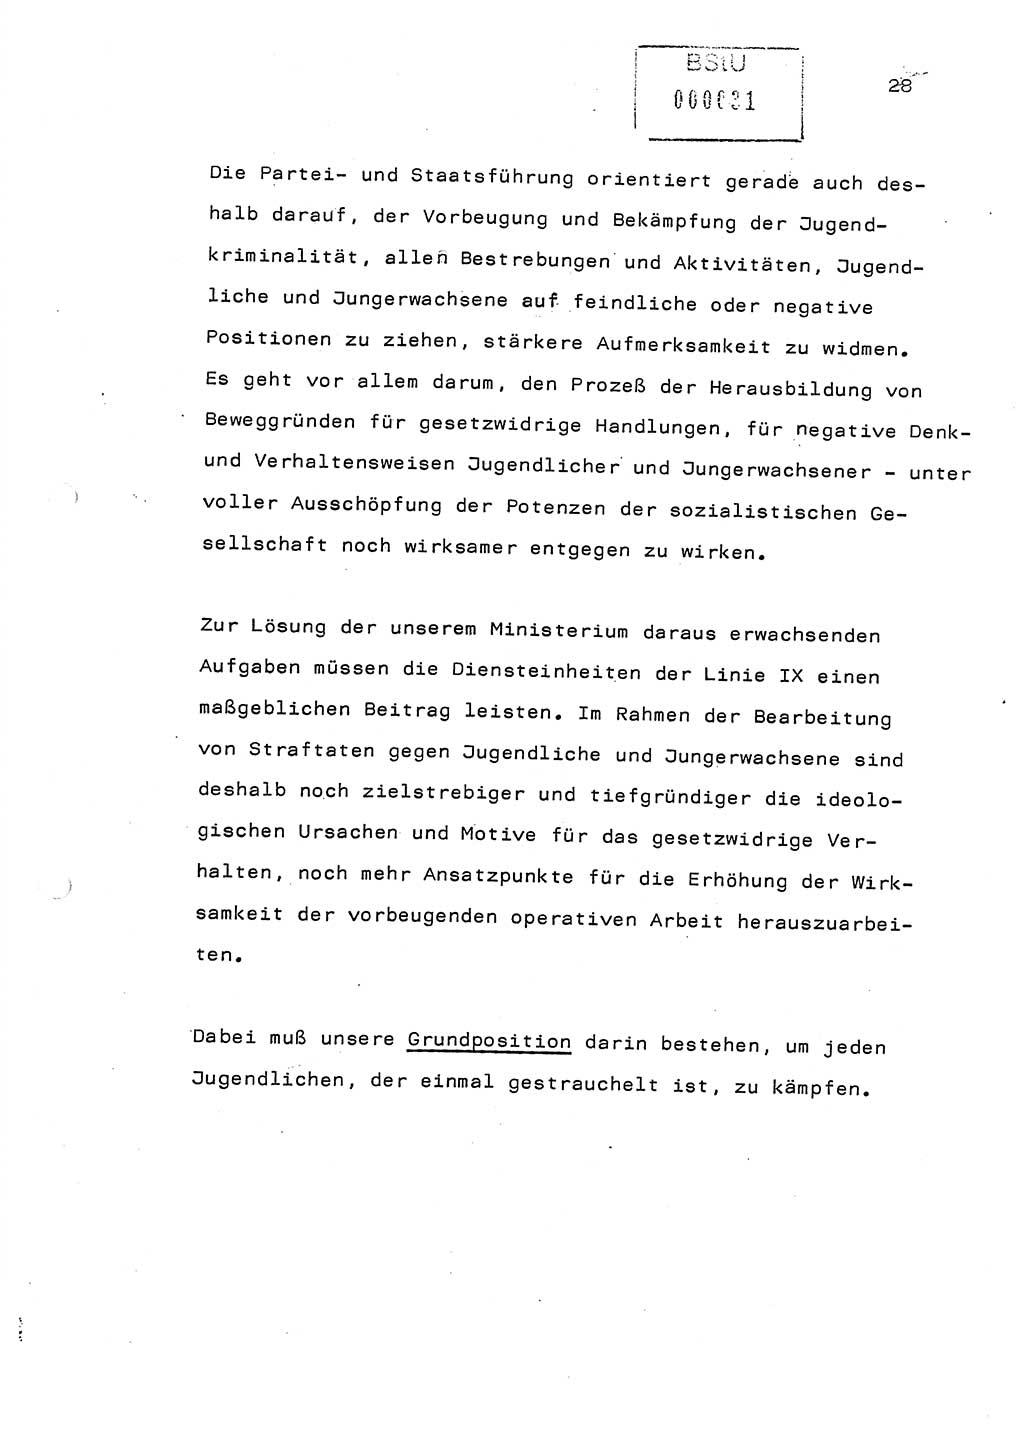 Referat (Generaloberst Erich Mielke) auf der Zentralen Dienstkonferenz am 24.5.1979 [Ministerium für Staatssicherheit (MfS), Deutsche Demokratische Republik (DDR), Der Minister], Berlin 1979, Seite 28 (Ref. DK DDR MfS Min. /79 1979, S. 28)